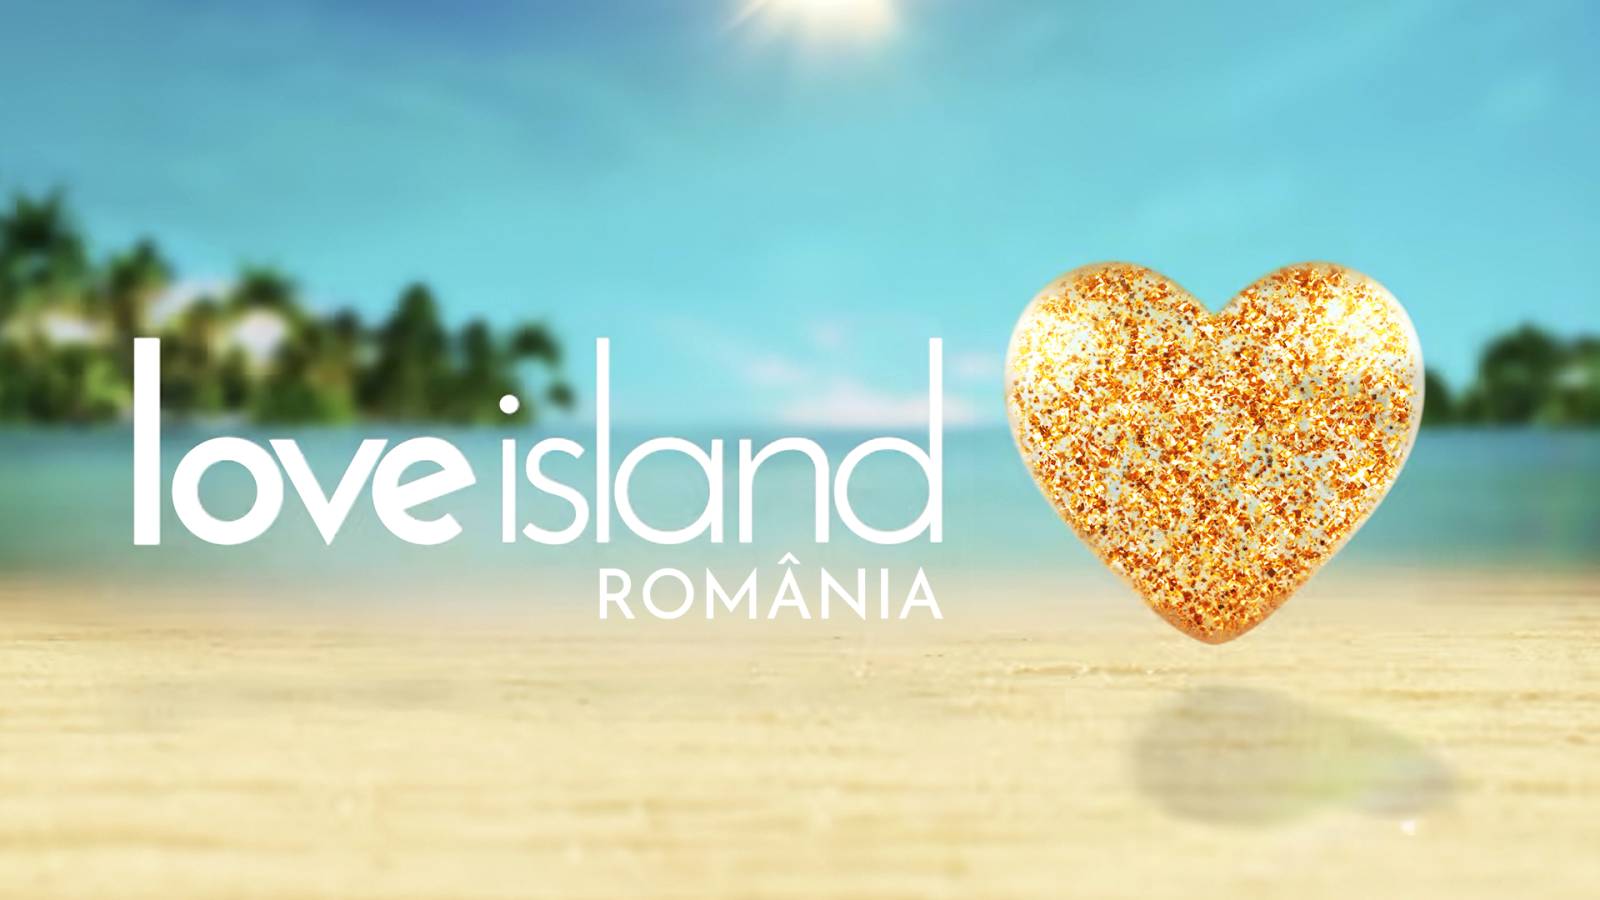 LOVE Island Imaginile ULTIMA ORA PRO TV Primul Sezon Romania